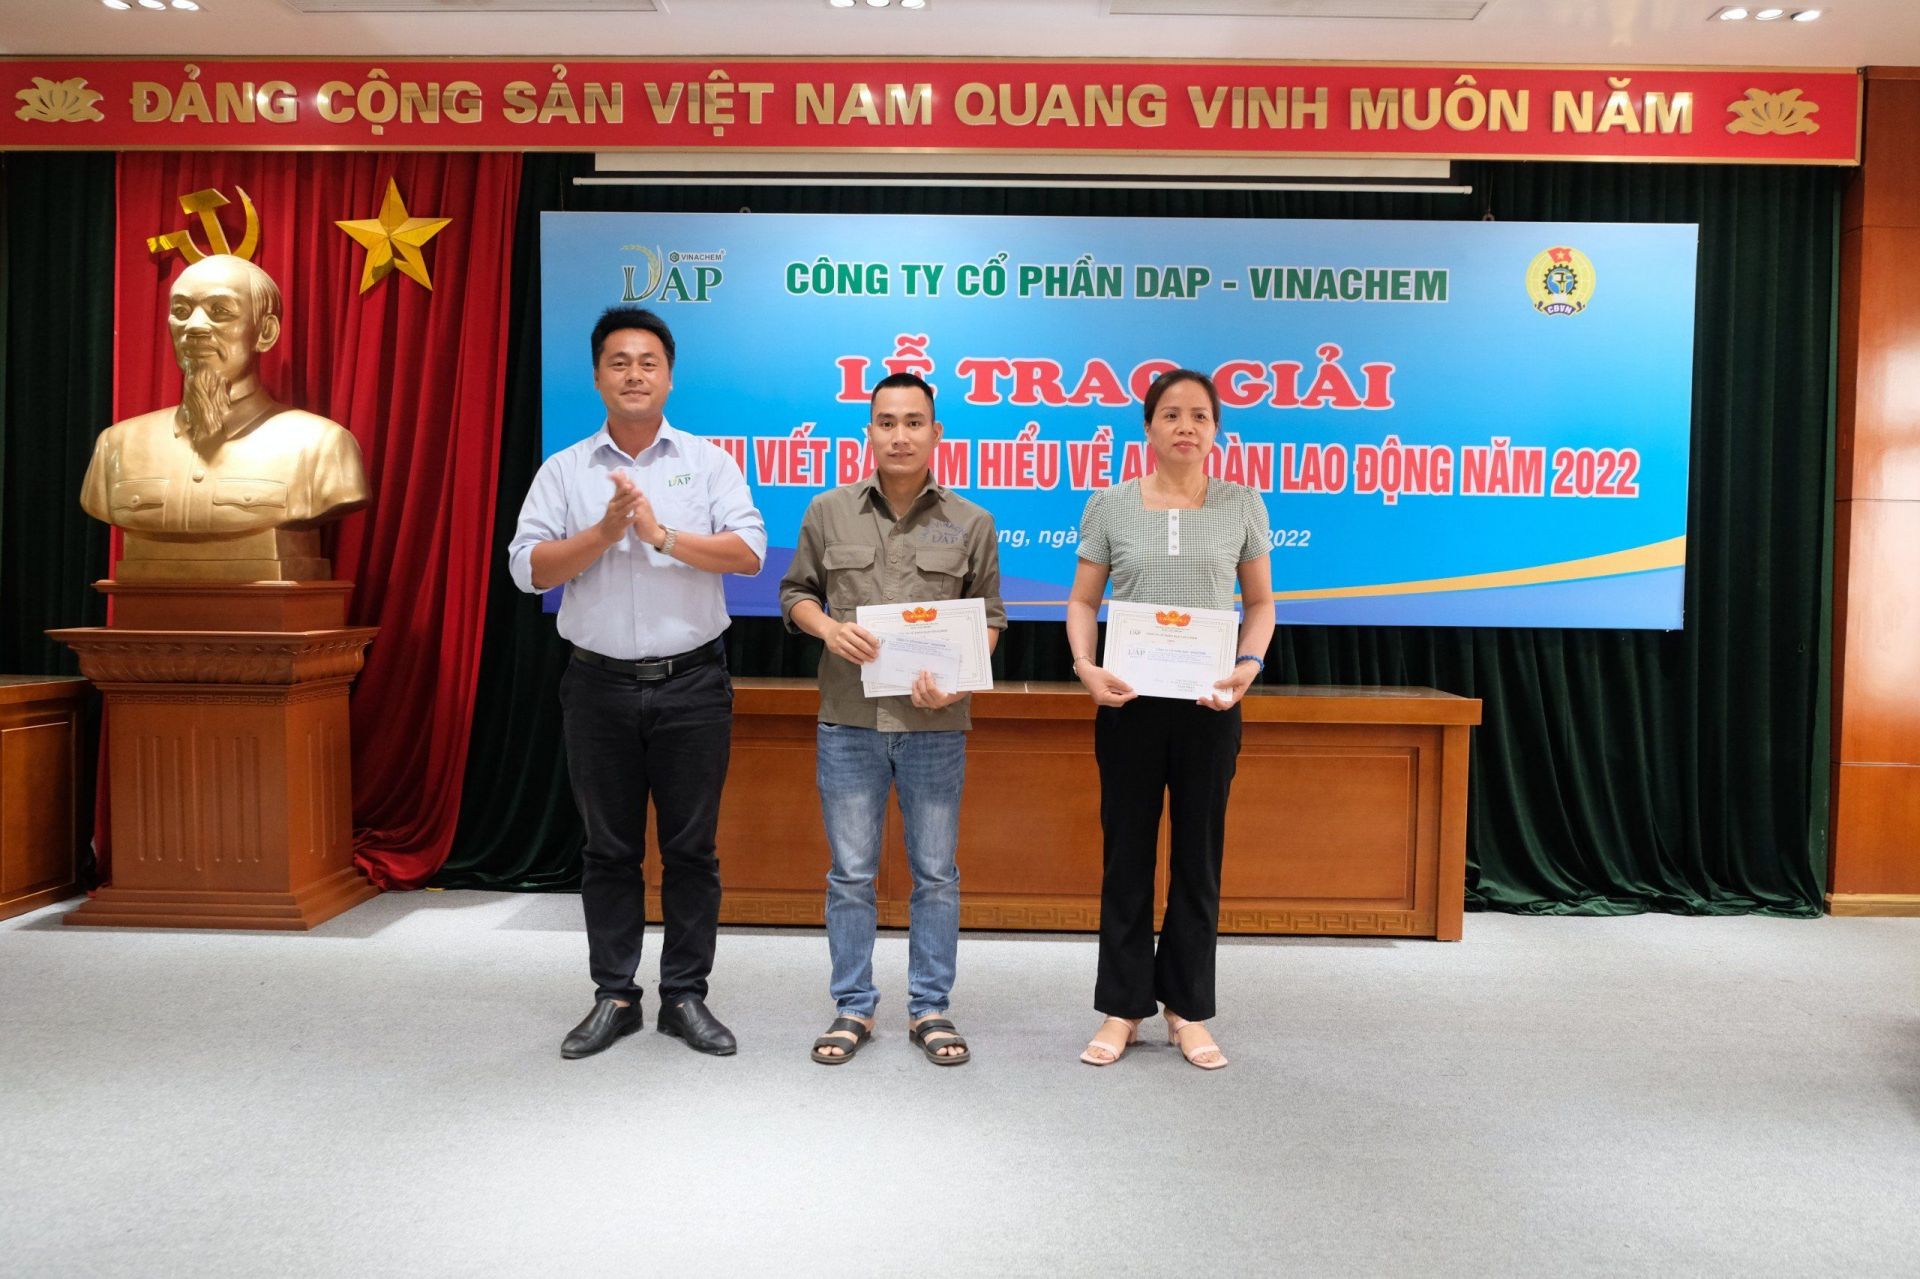 DAP trao giải cuộc thi tìm hiểu về ATVSLĐ